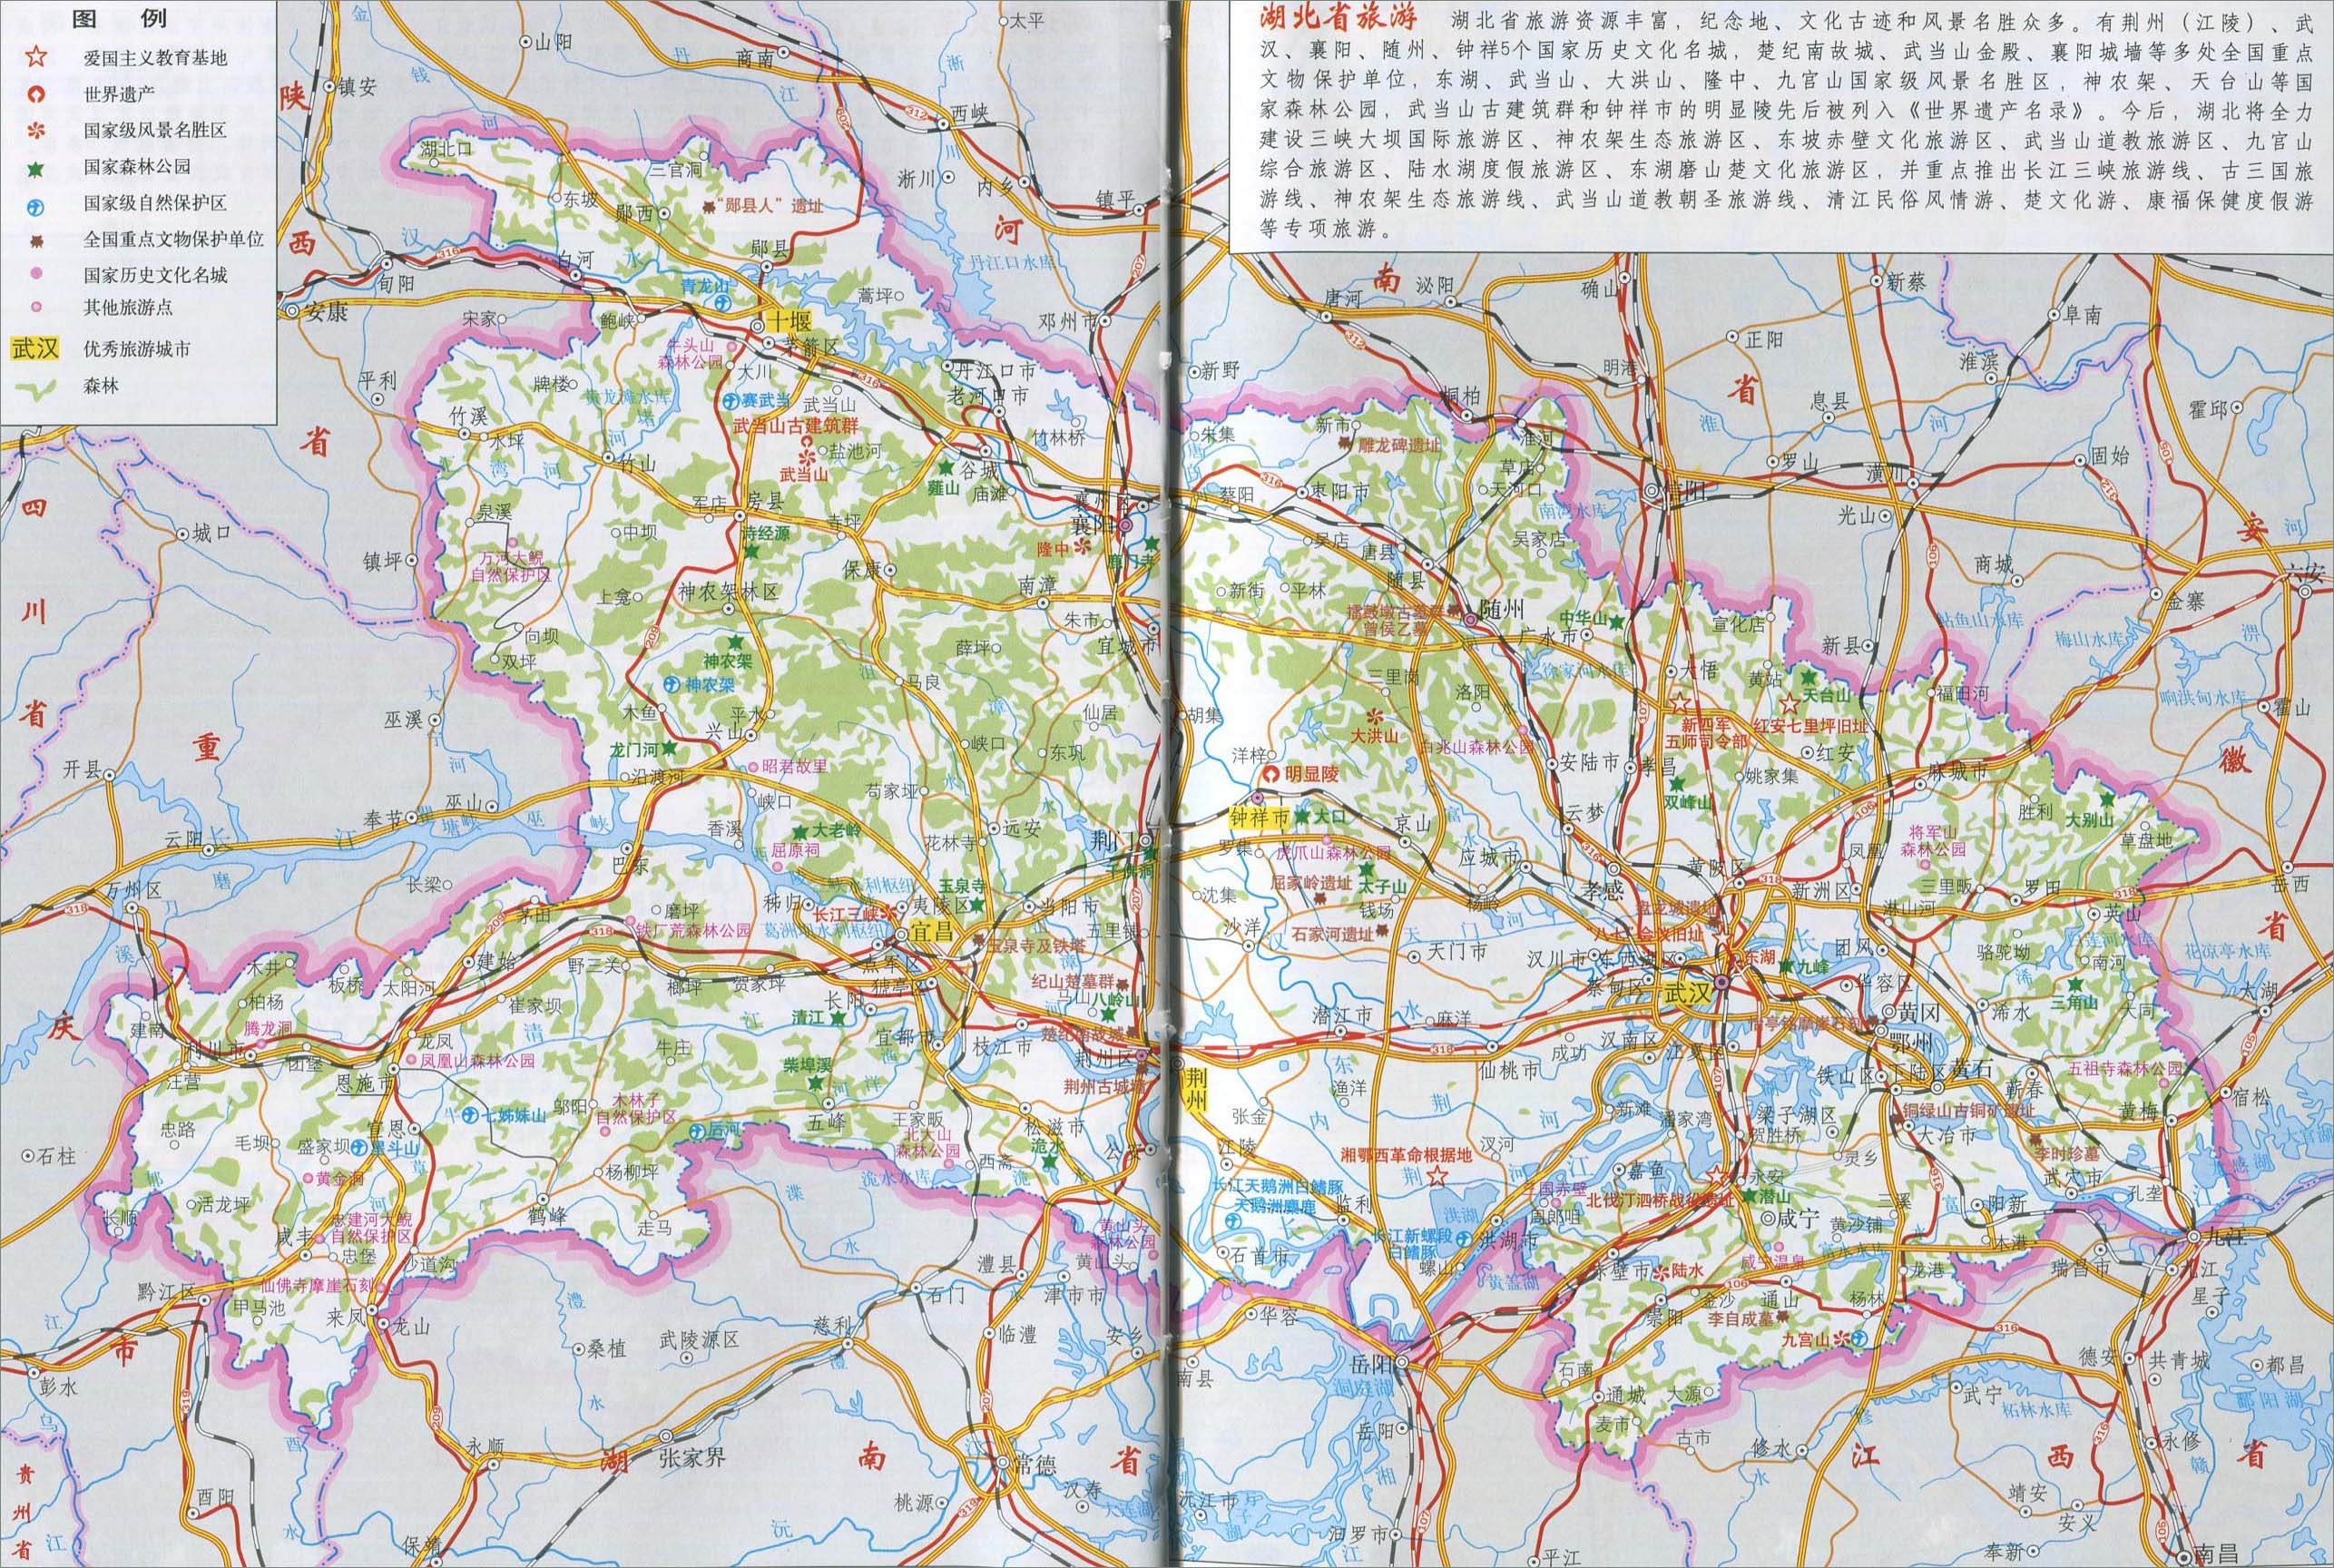 中国地图 湖北 >> 湖北省旅游地图  分类: 湖北 中国旅游地图  更新图片